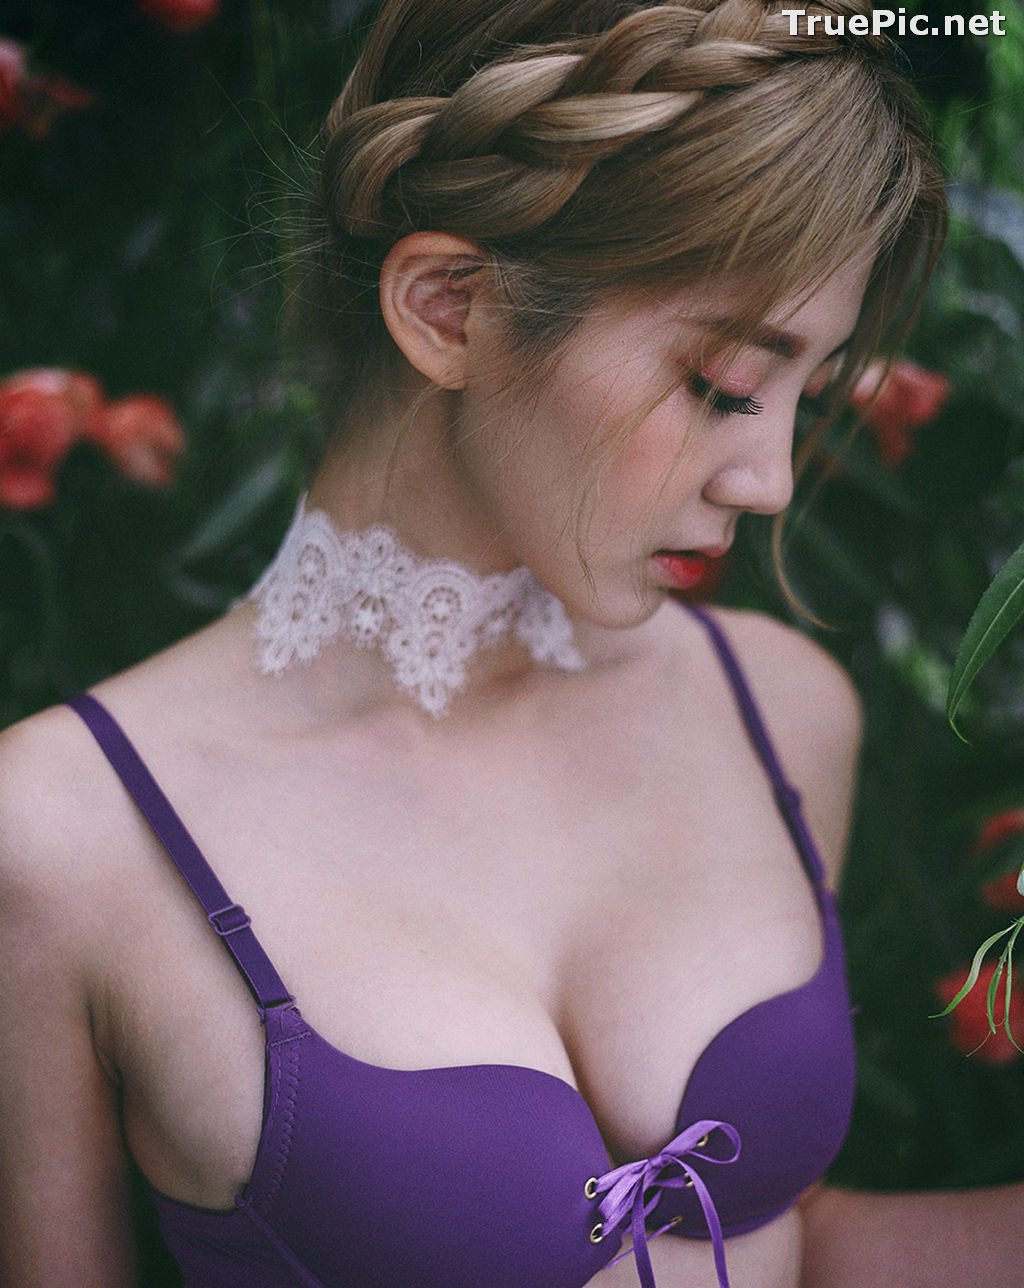 Image Lee Chae Eun - Korean Fashion Model - Purple Lingerie Set - TruePic.net - Picture-4